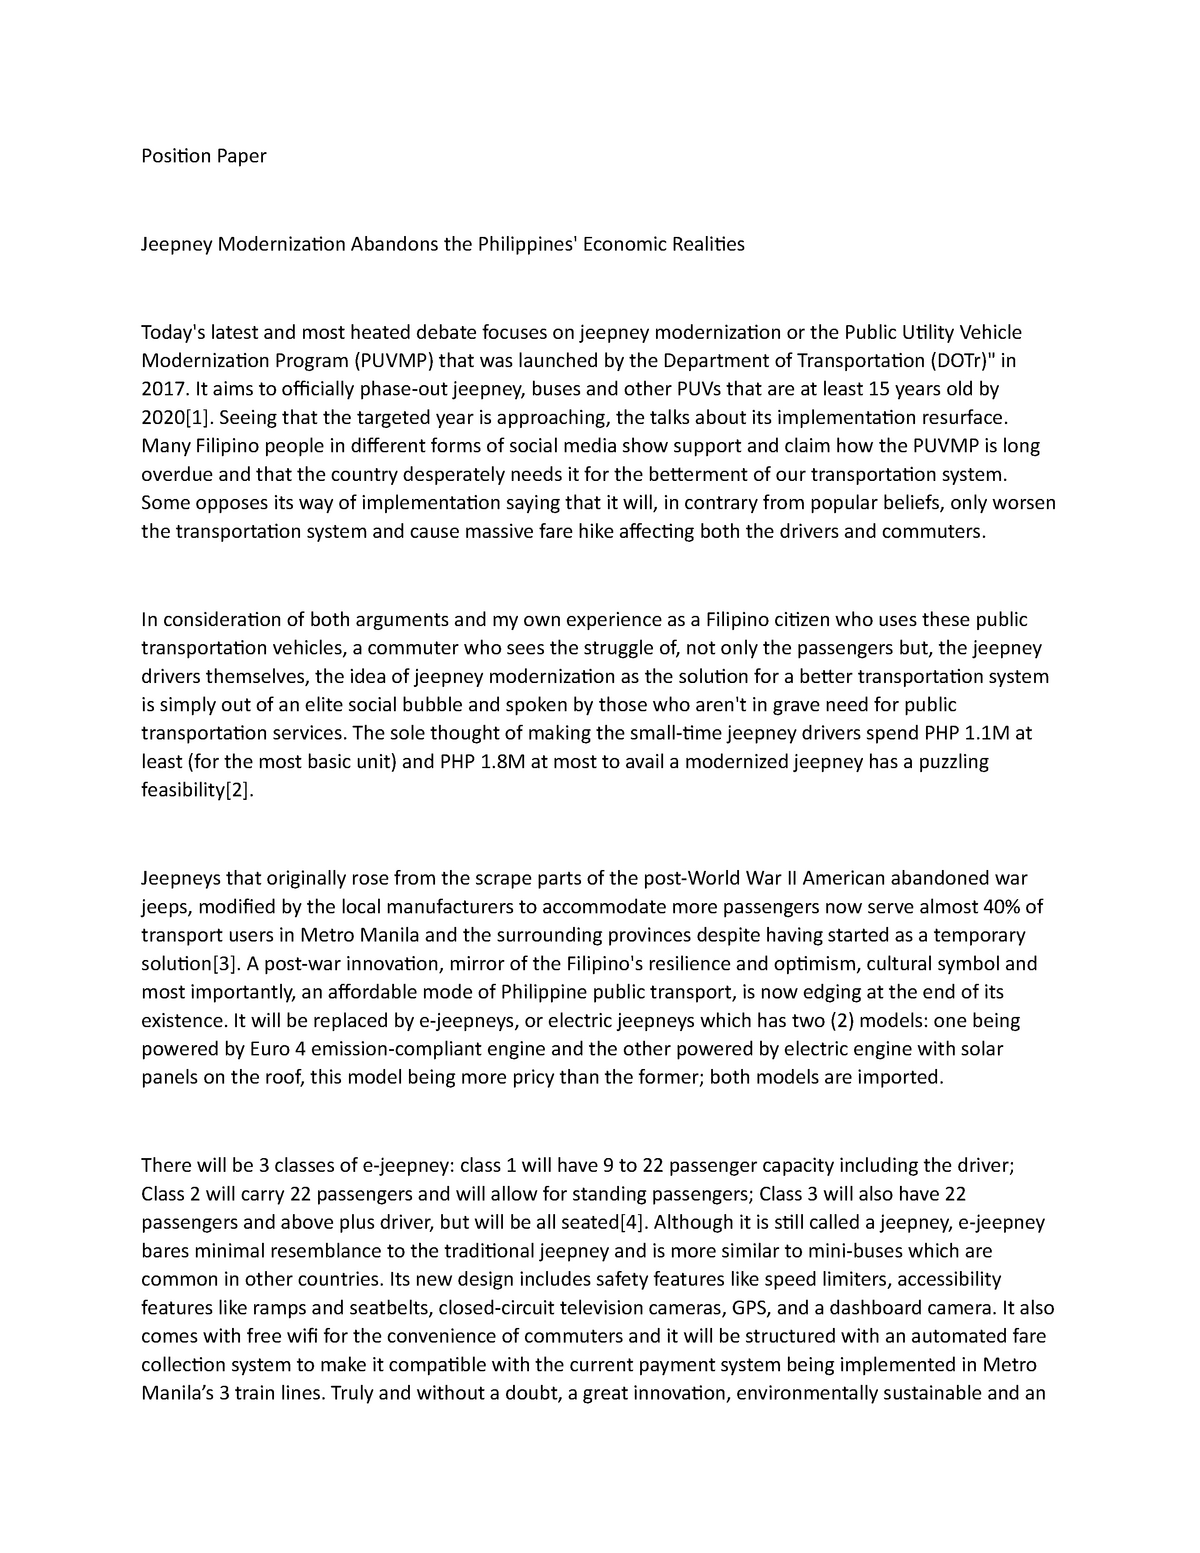 research paper about jeepney modernization pdf